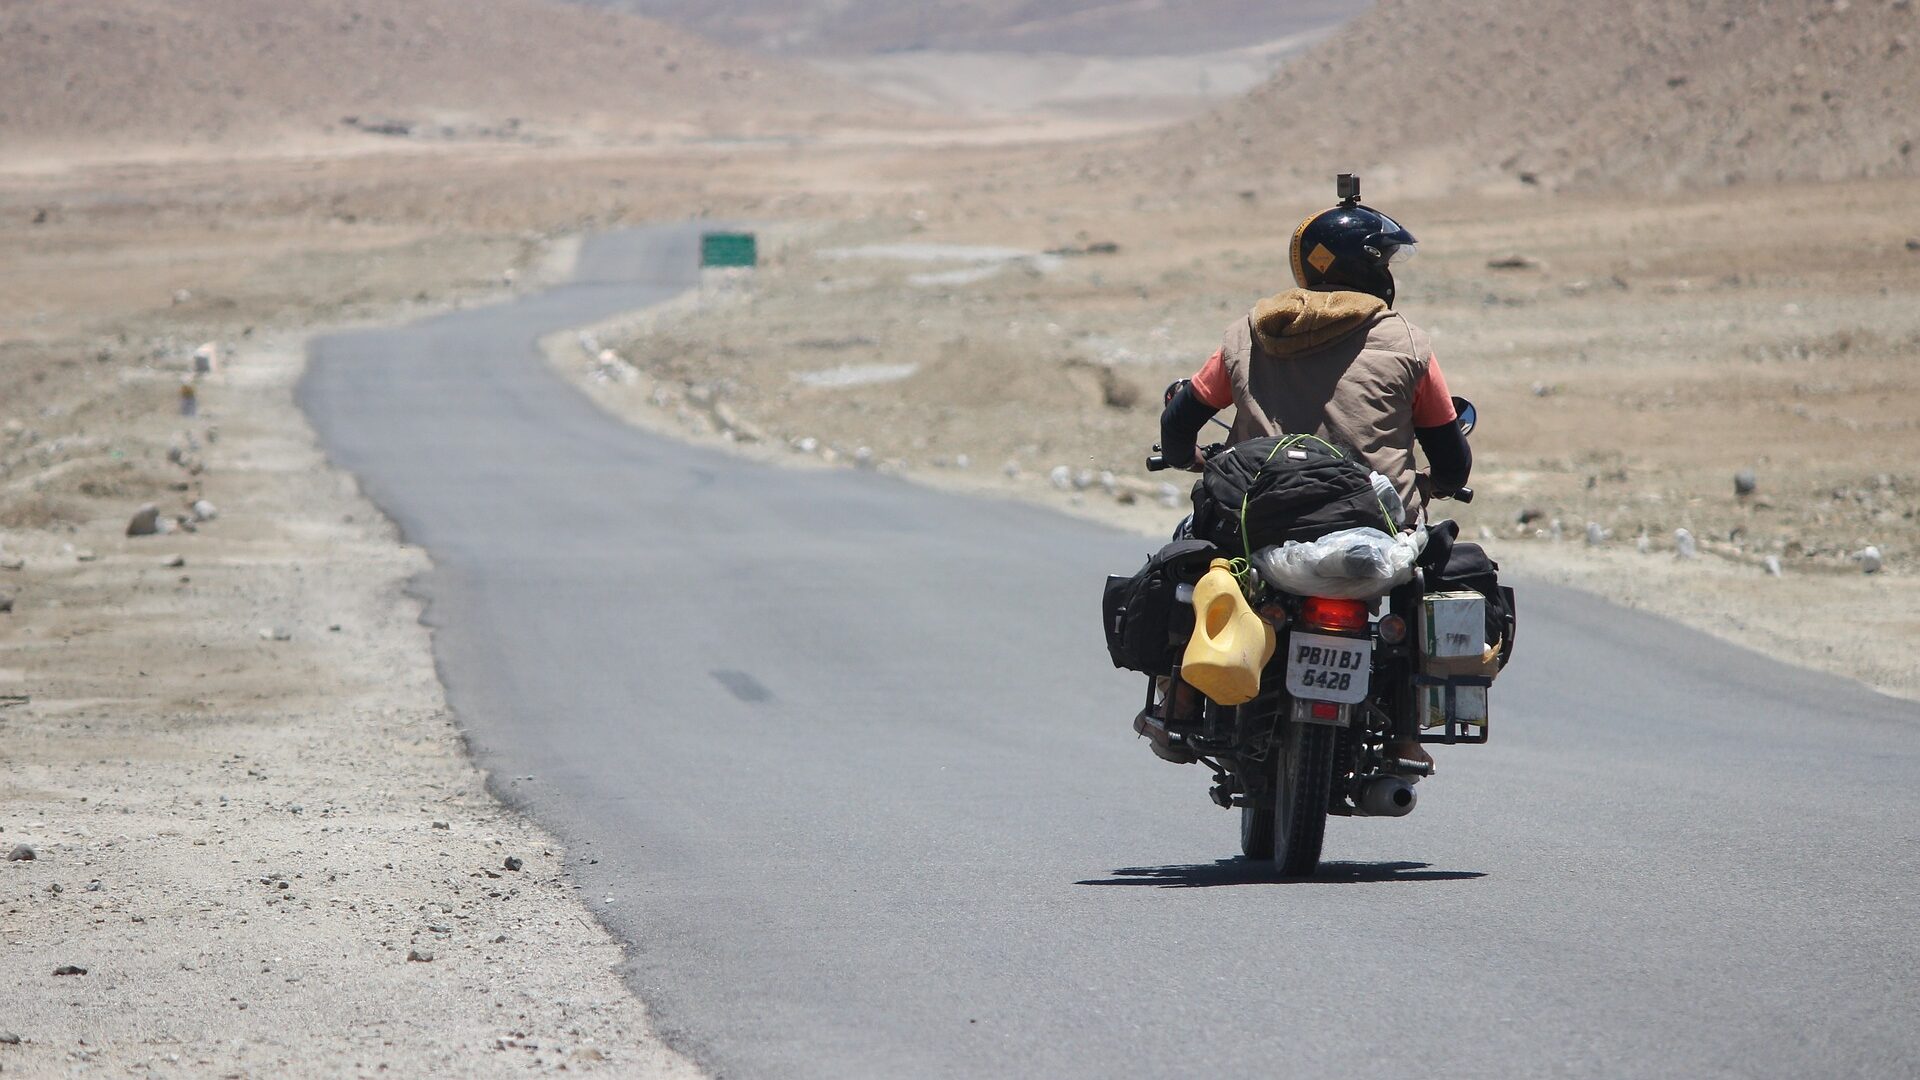 Ladakh trip from Delhi| Arrange my Tour Guide